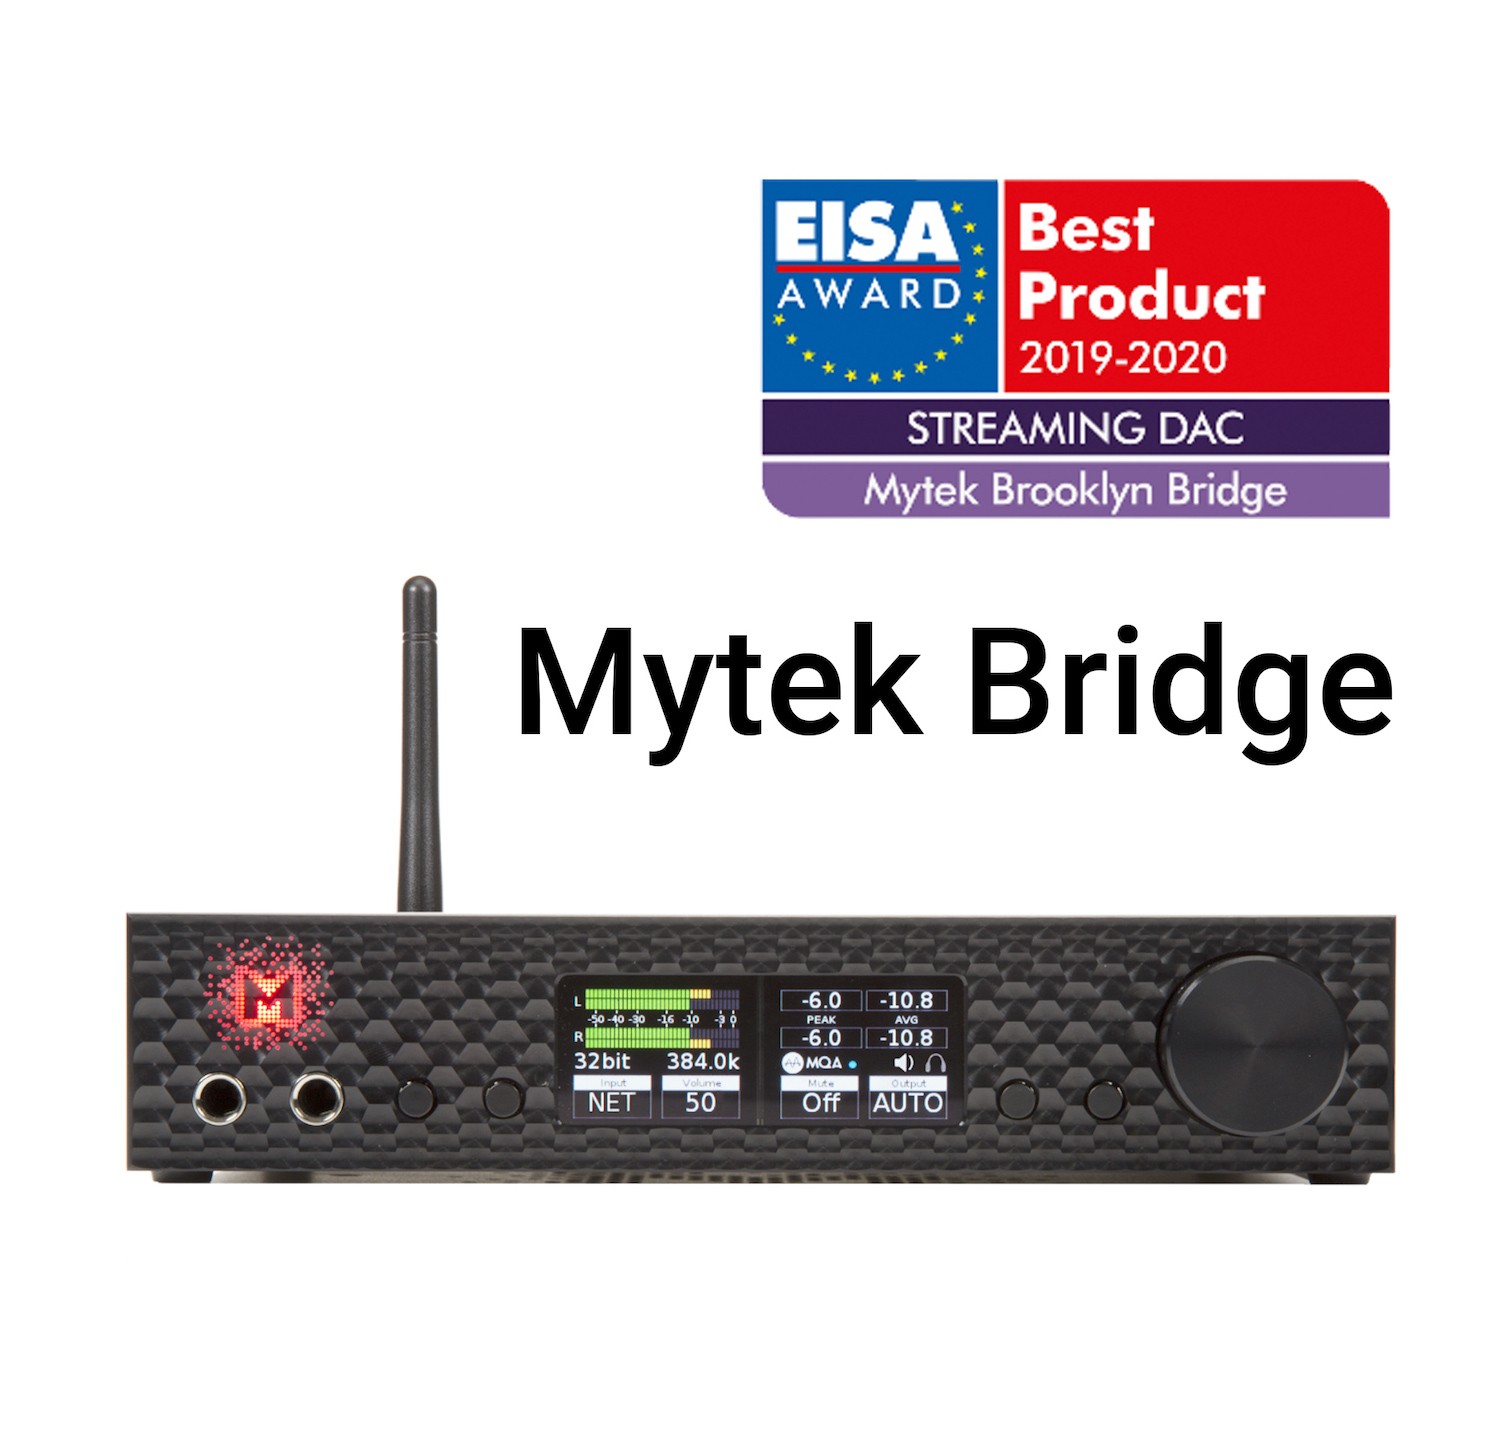 Topplacering, EISA Award till Mytek Bridge